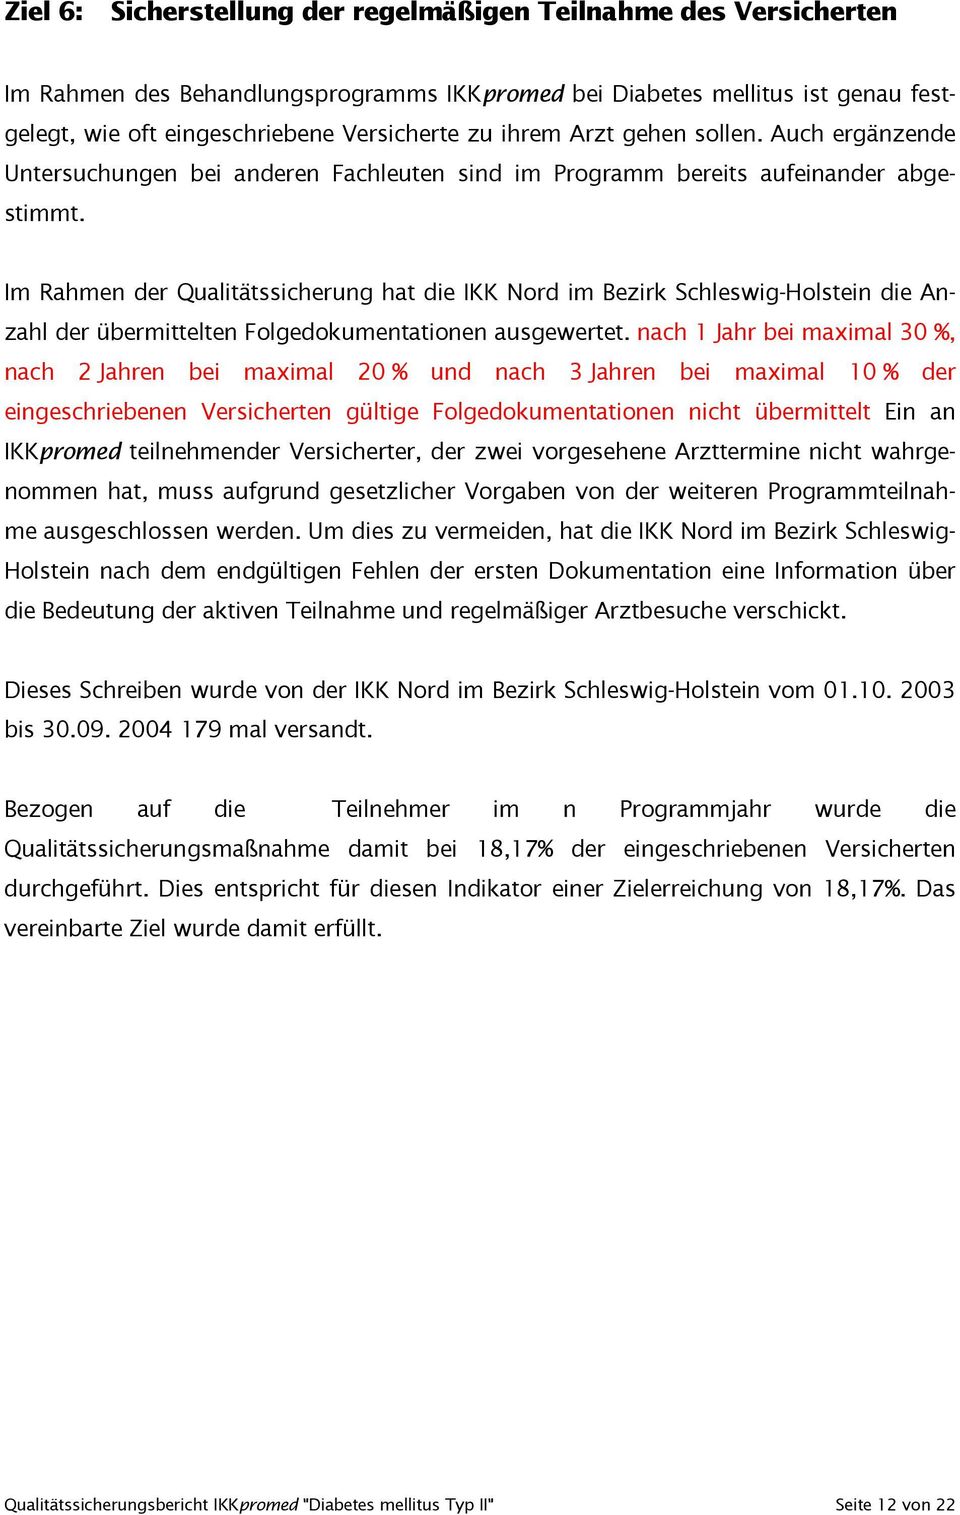 Im Rahmen der Qualitätssicherung hat die IKK Nord im Bezirk Schleswig-Holstein die Anzahl der übermittelten Folgedokumentationen ausgewertet.